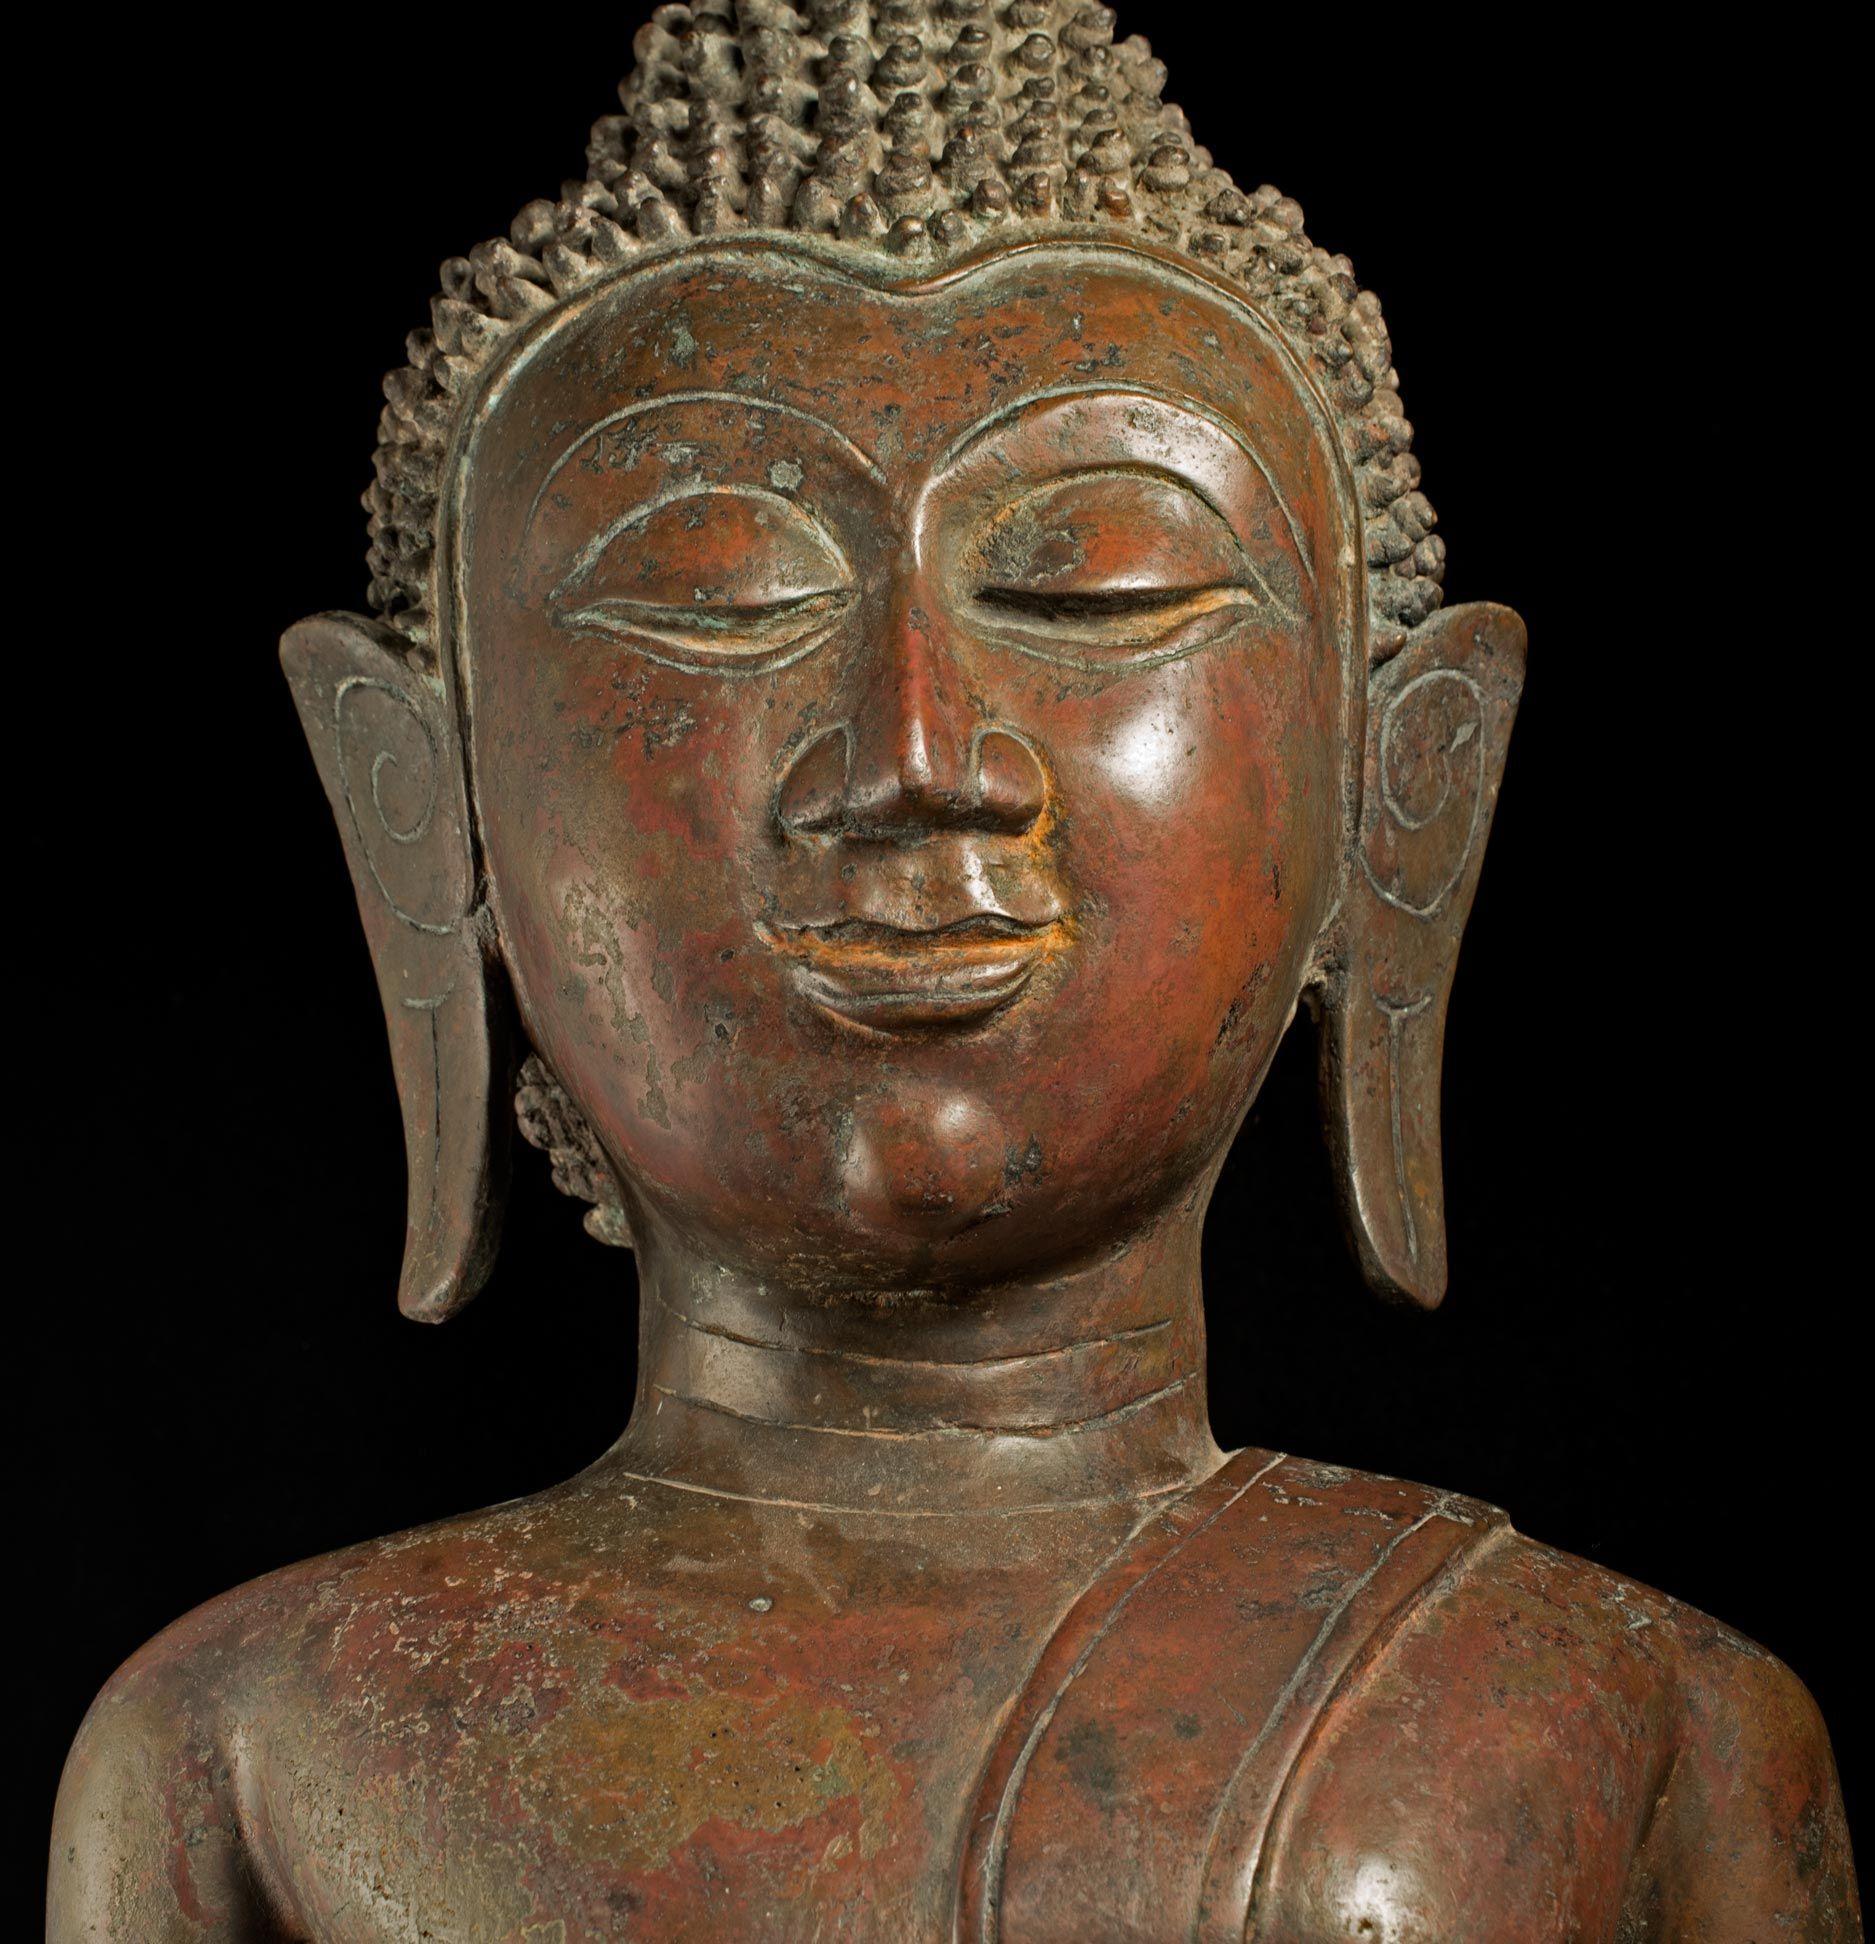 Moulage Grand royaume de Bouddha en bronze du 18/19e siècle de Nan dans le nord-est de la Thaïlande - 8961